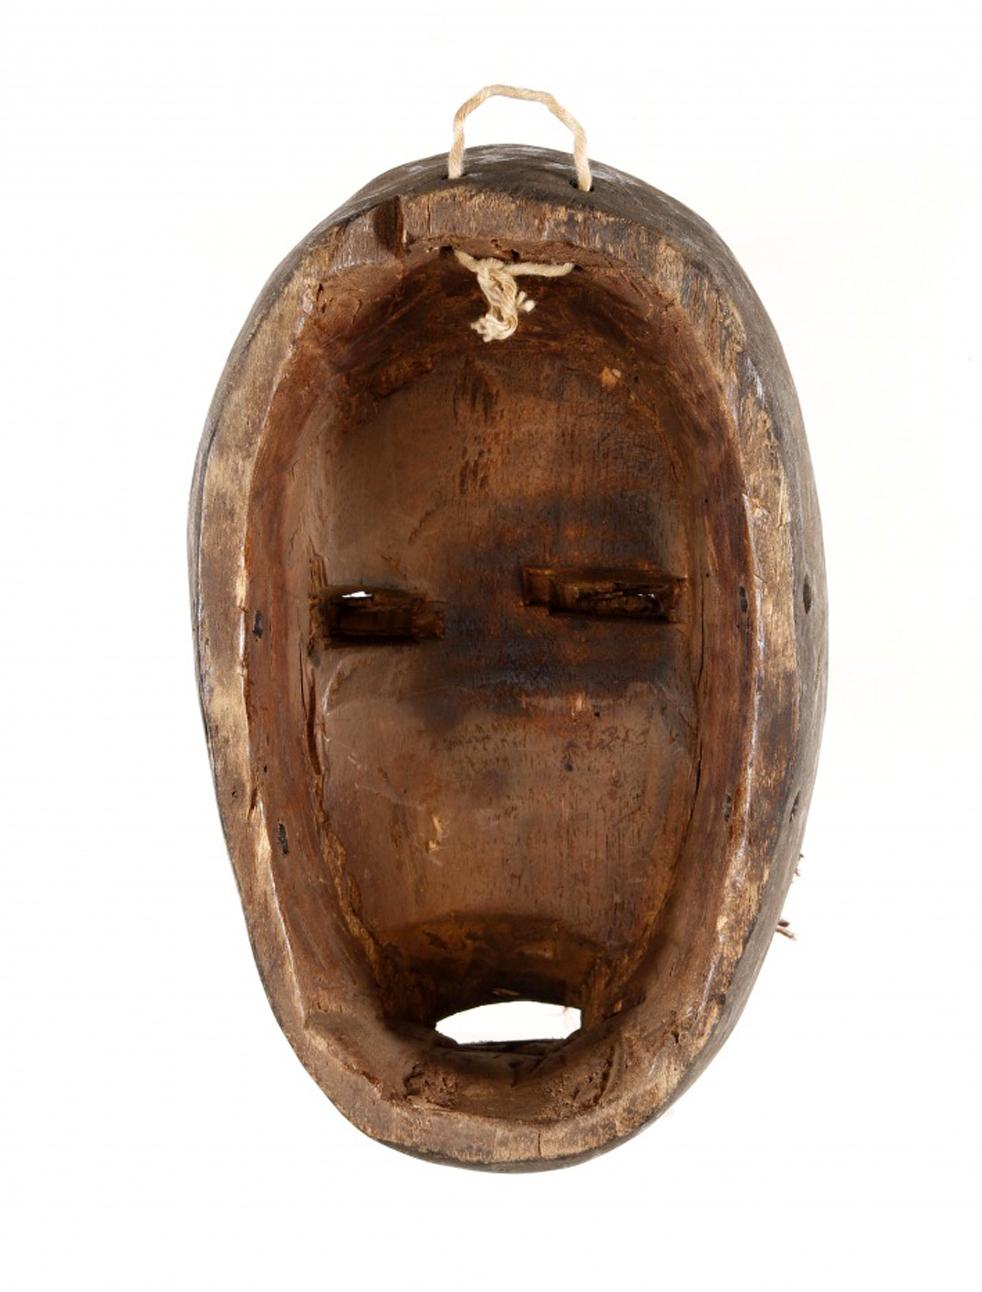 Rare masque d'art africain en bois sculpté de la Côte d'Ivoire ou du Liberia du 20ème siècle.
Ce masque est sculpté en bois, représentant un visage féminin en bois sculpté peint et dans des tons de rouge, avec des applications de tissus et